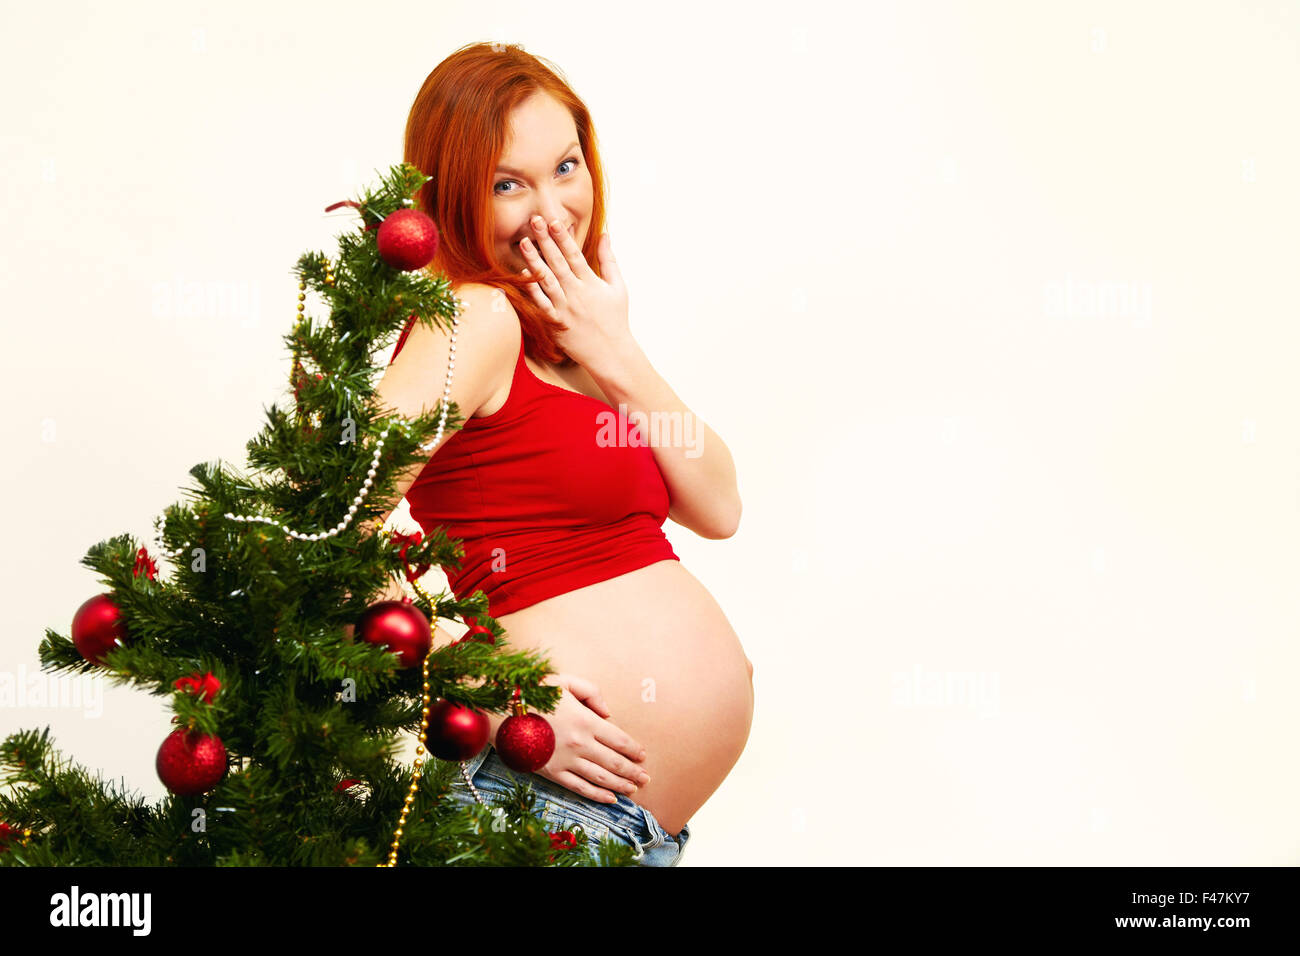 Ritratto di un sorridente redhead donna incinta vicino all'albero di Natale Natale del popolo Foto Stock